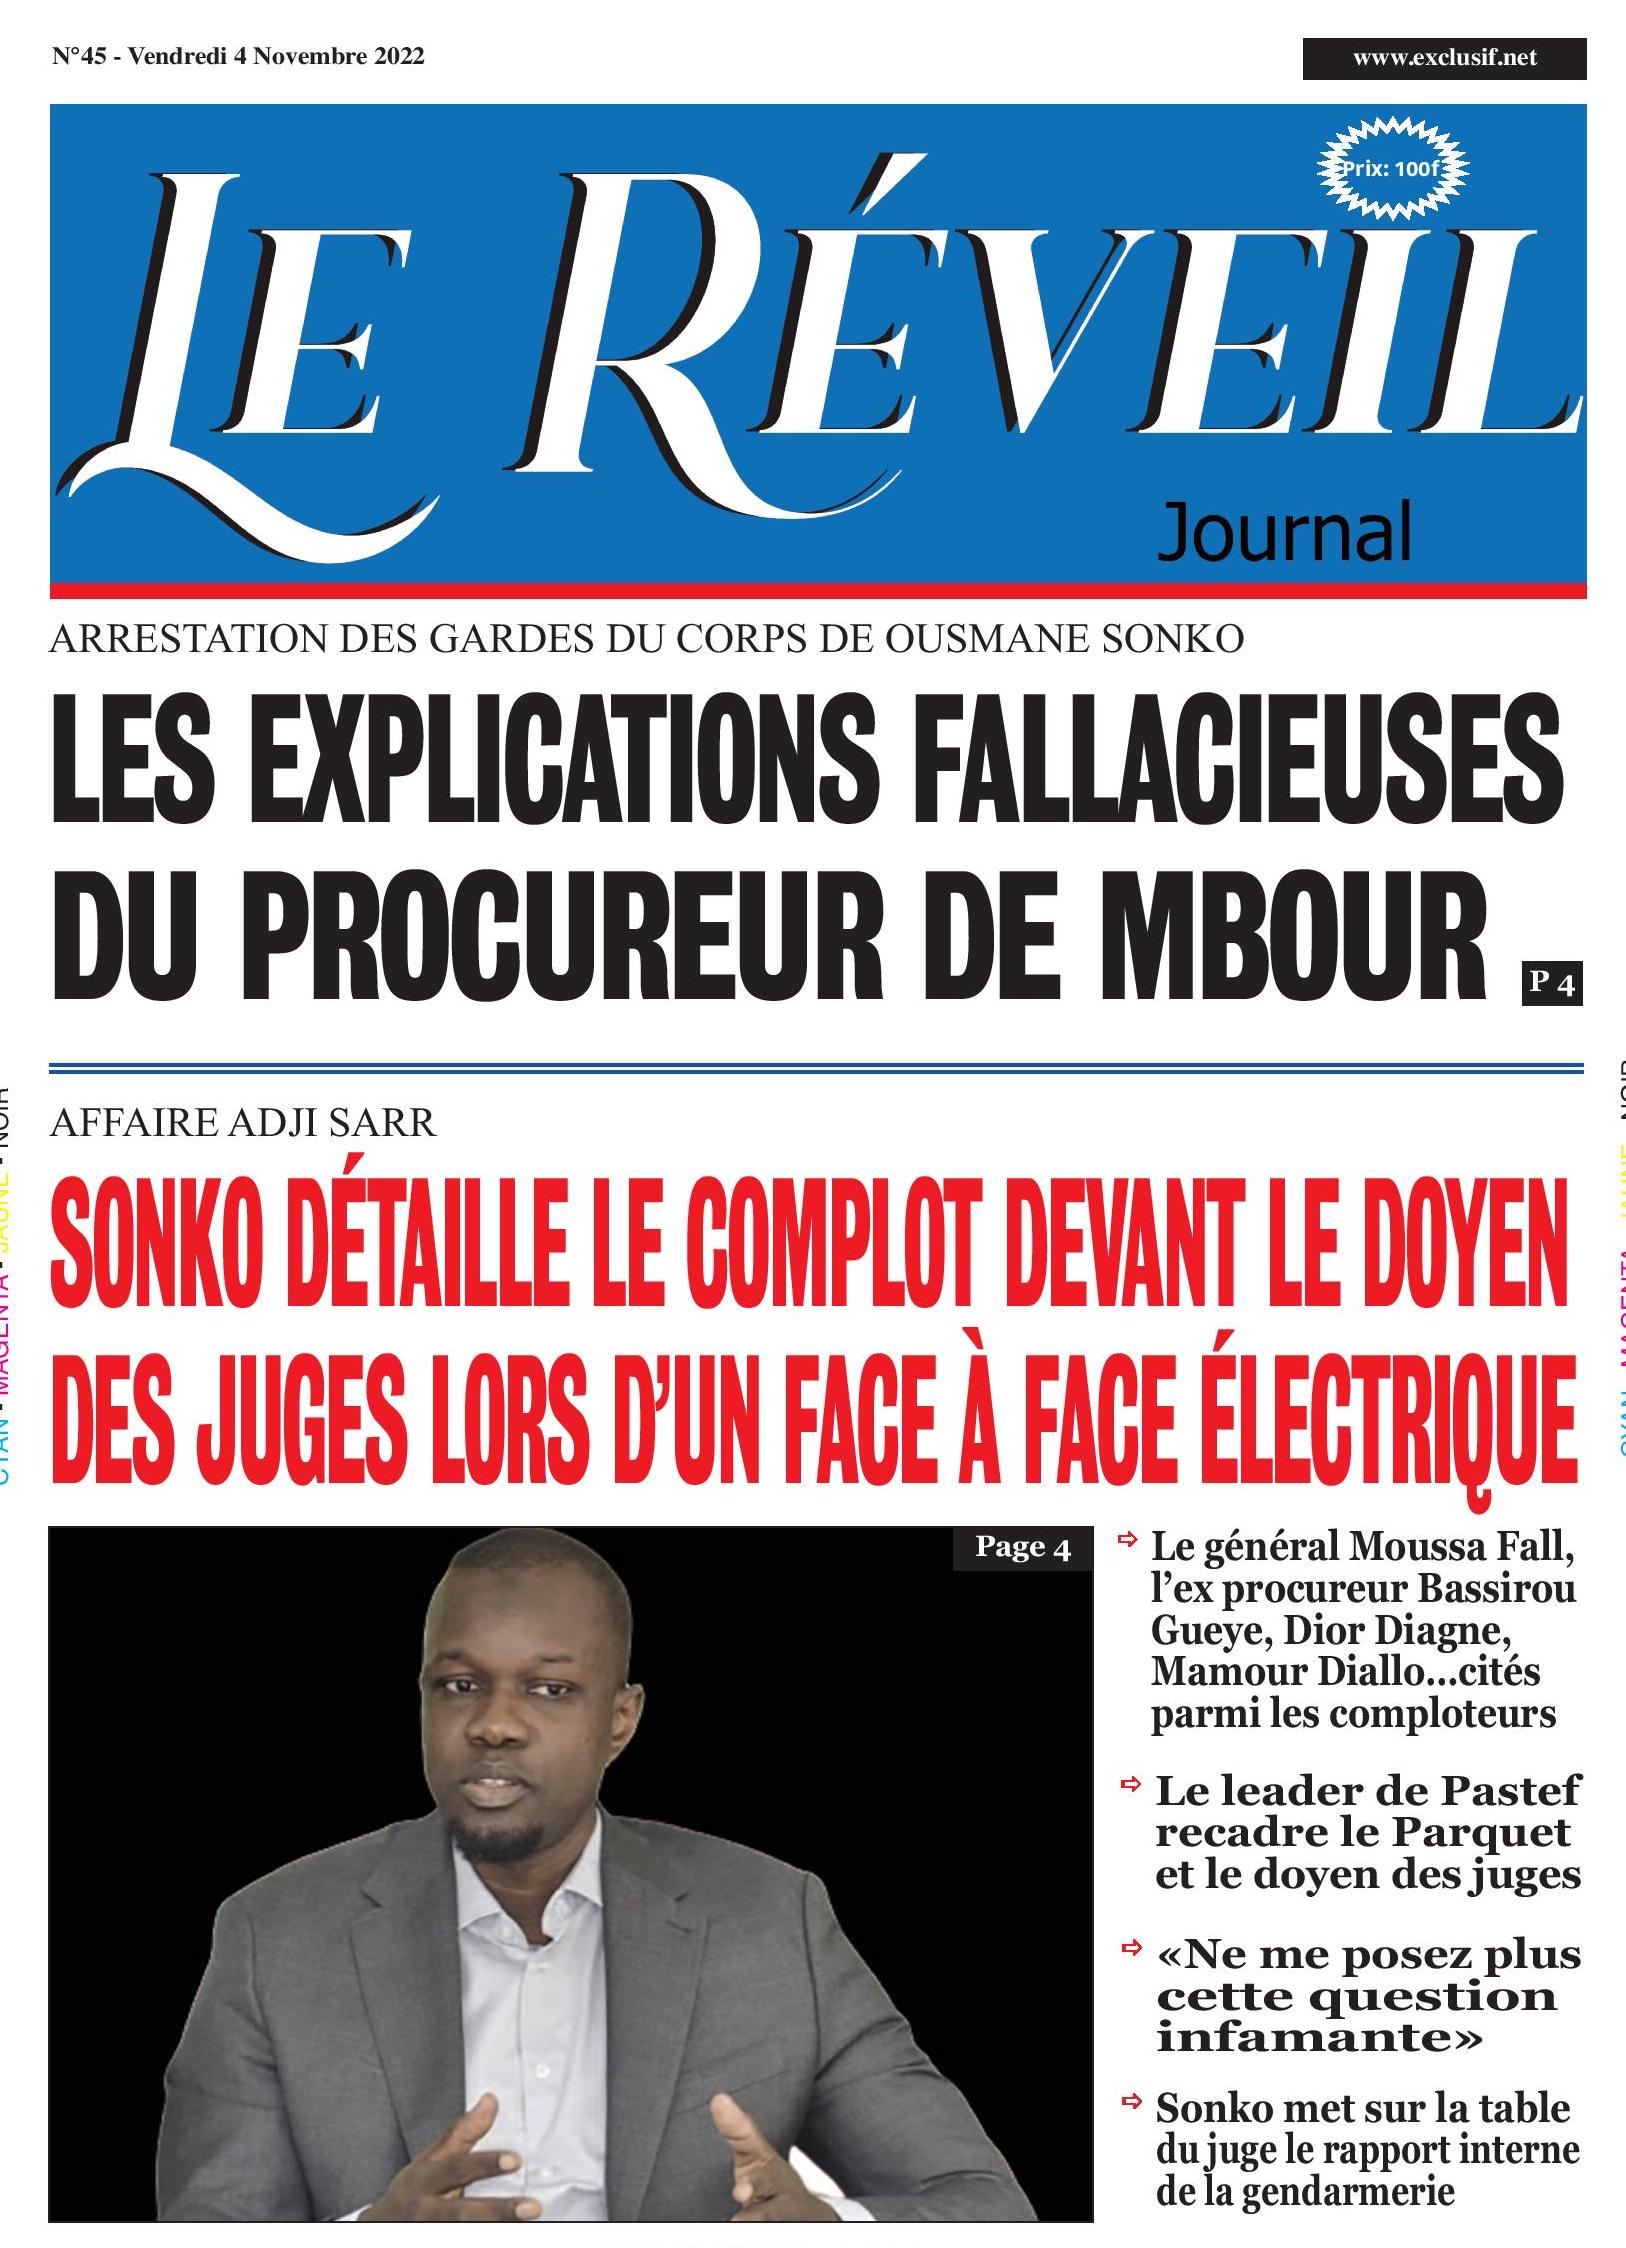 Le Quotidien "Le Réveil" du Vendredi 04 Novembre 2022